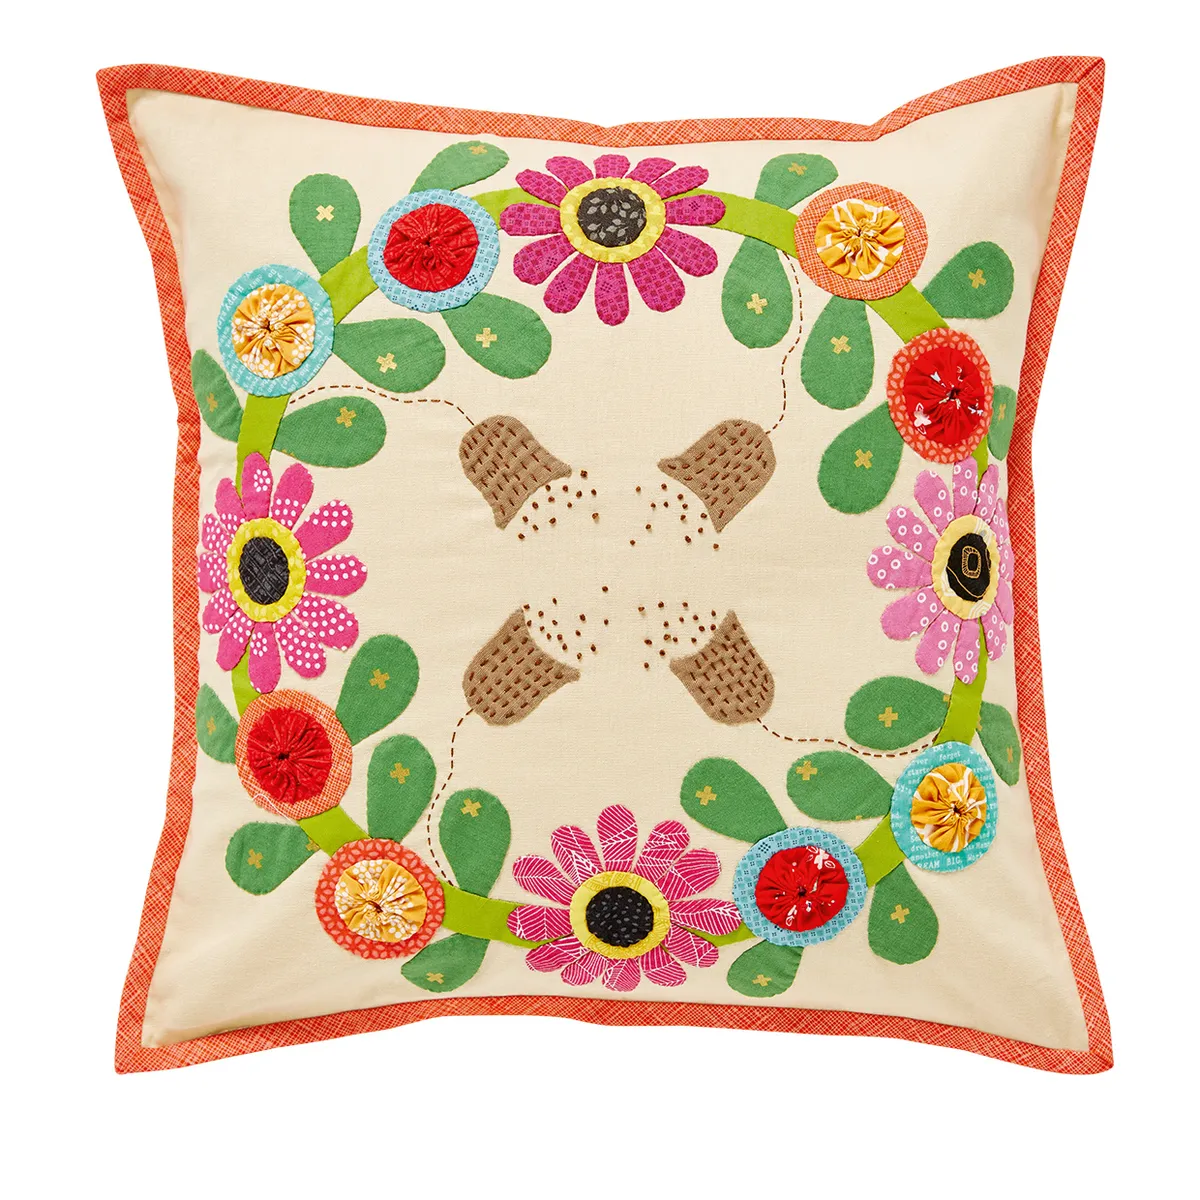 Summer floral applique cushion